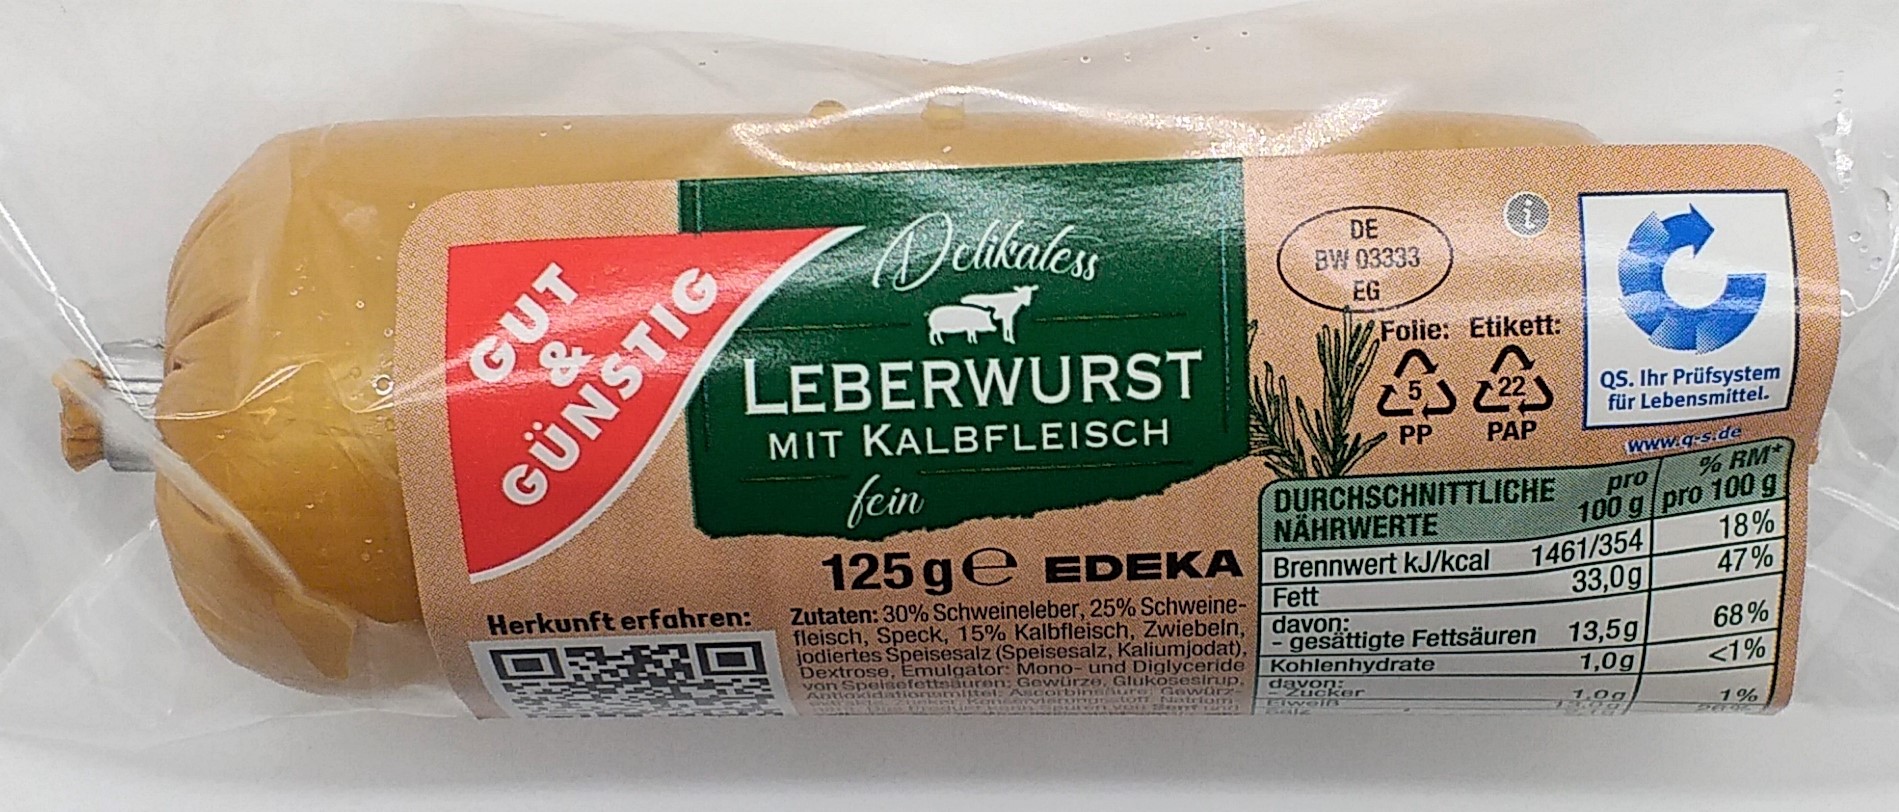 G&G Leberwurst mit Kalbfleisch 125g